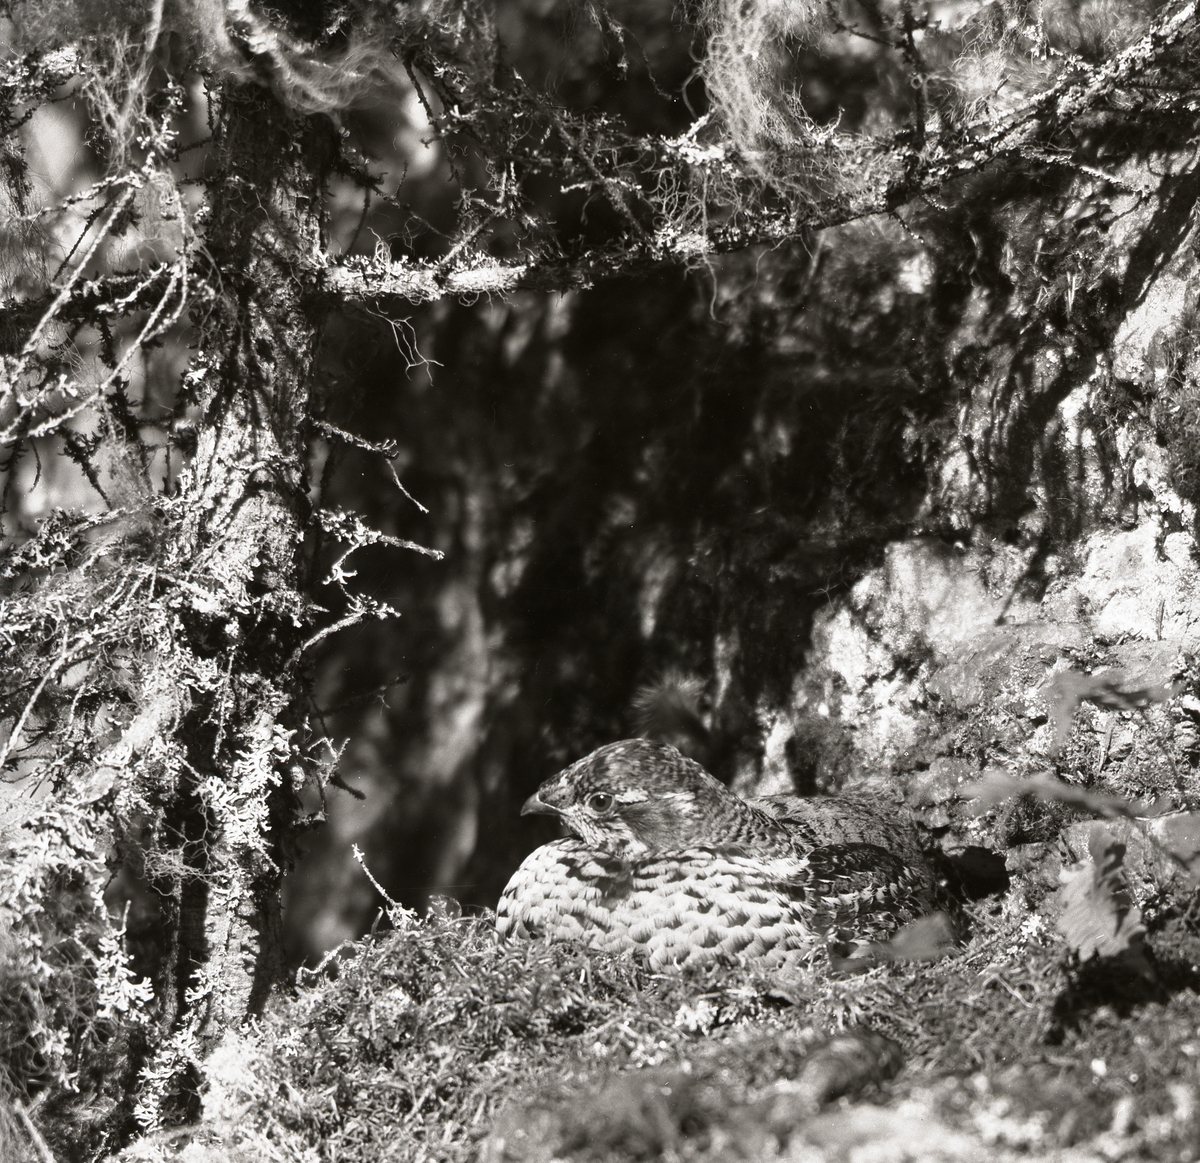 Ruvnde Järpe ligger i boet blad grenar med skägglav, 25 maj 1954.